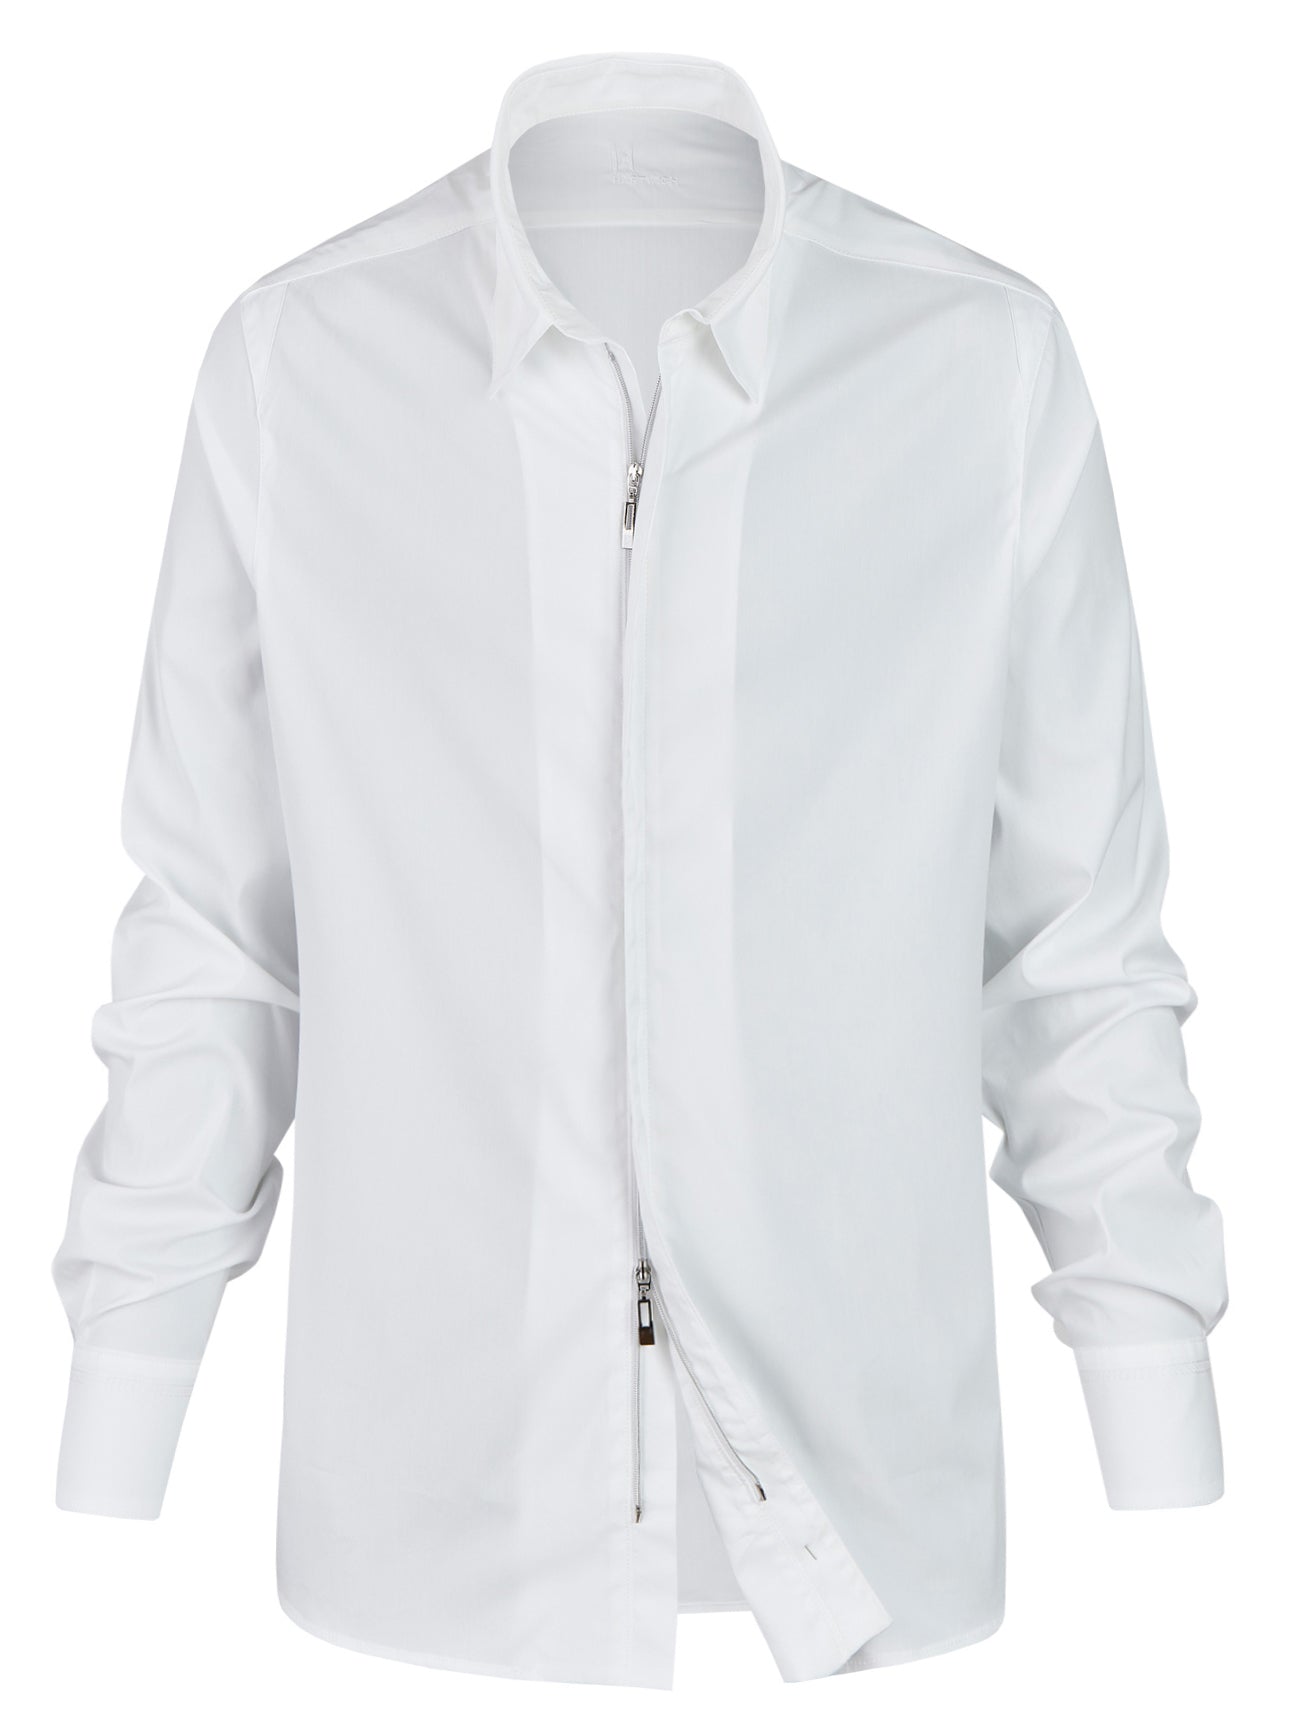 Imola - Hemd weiß mit Reißverschluss